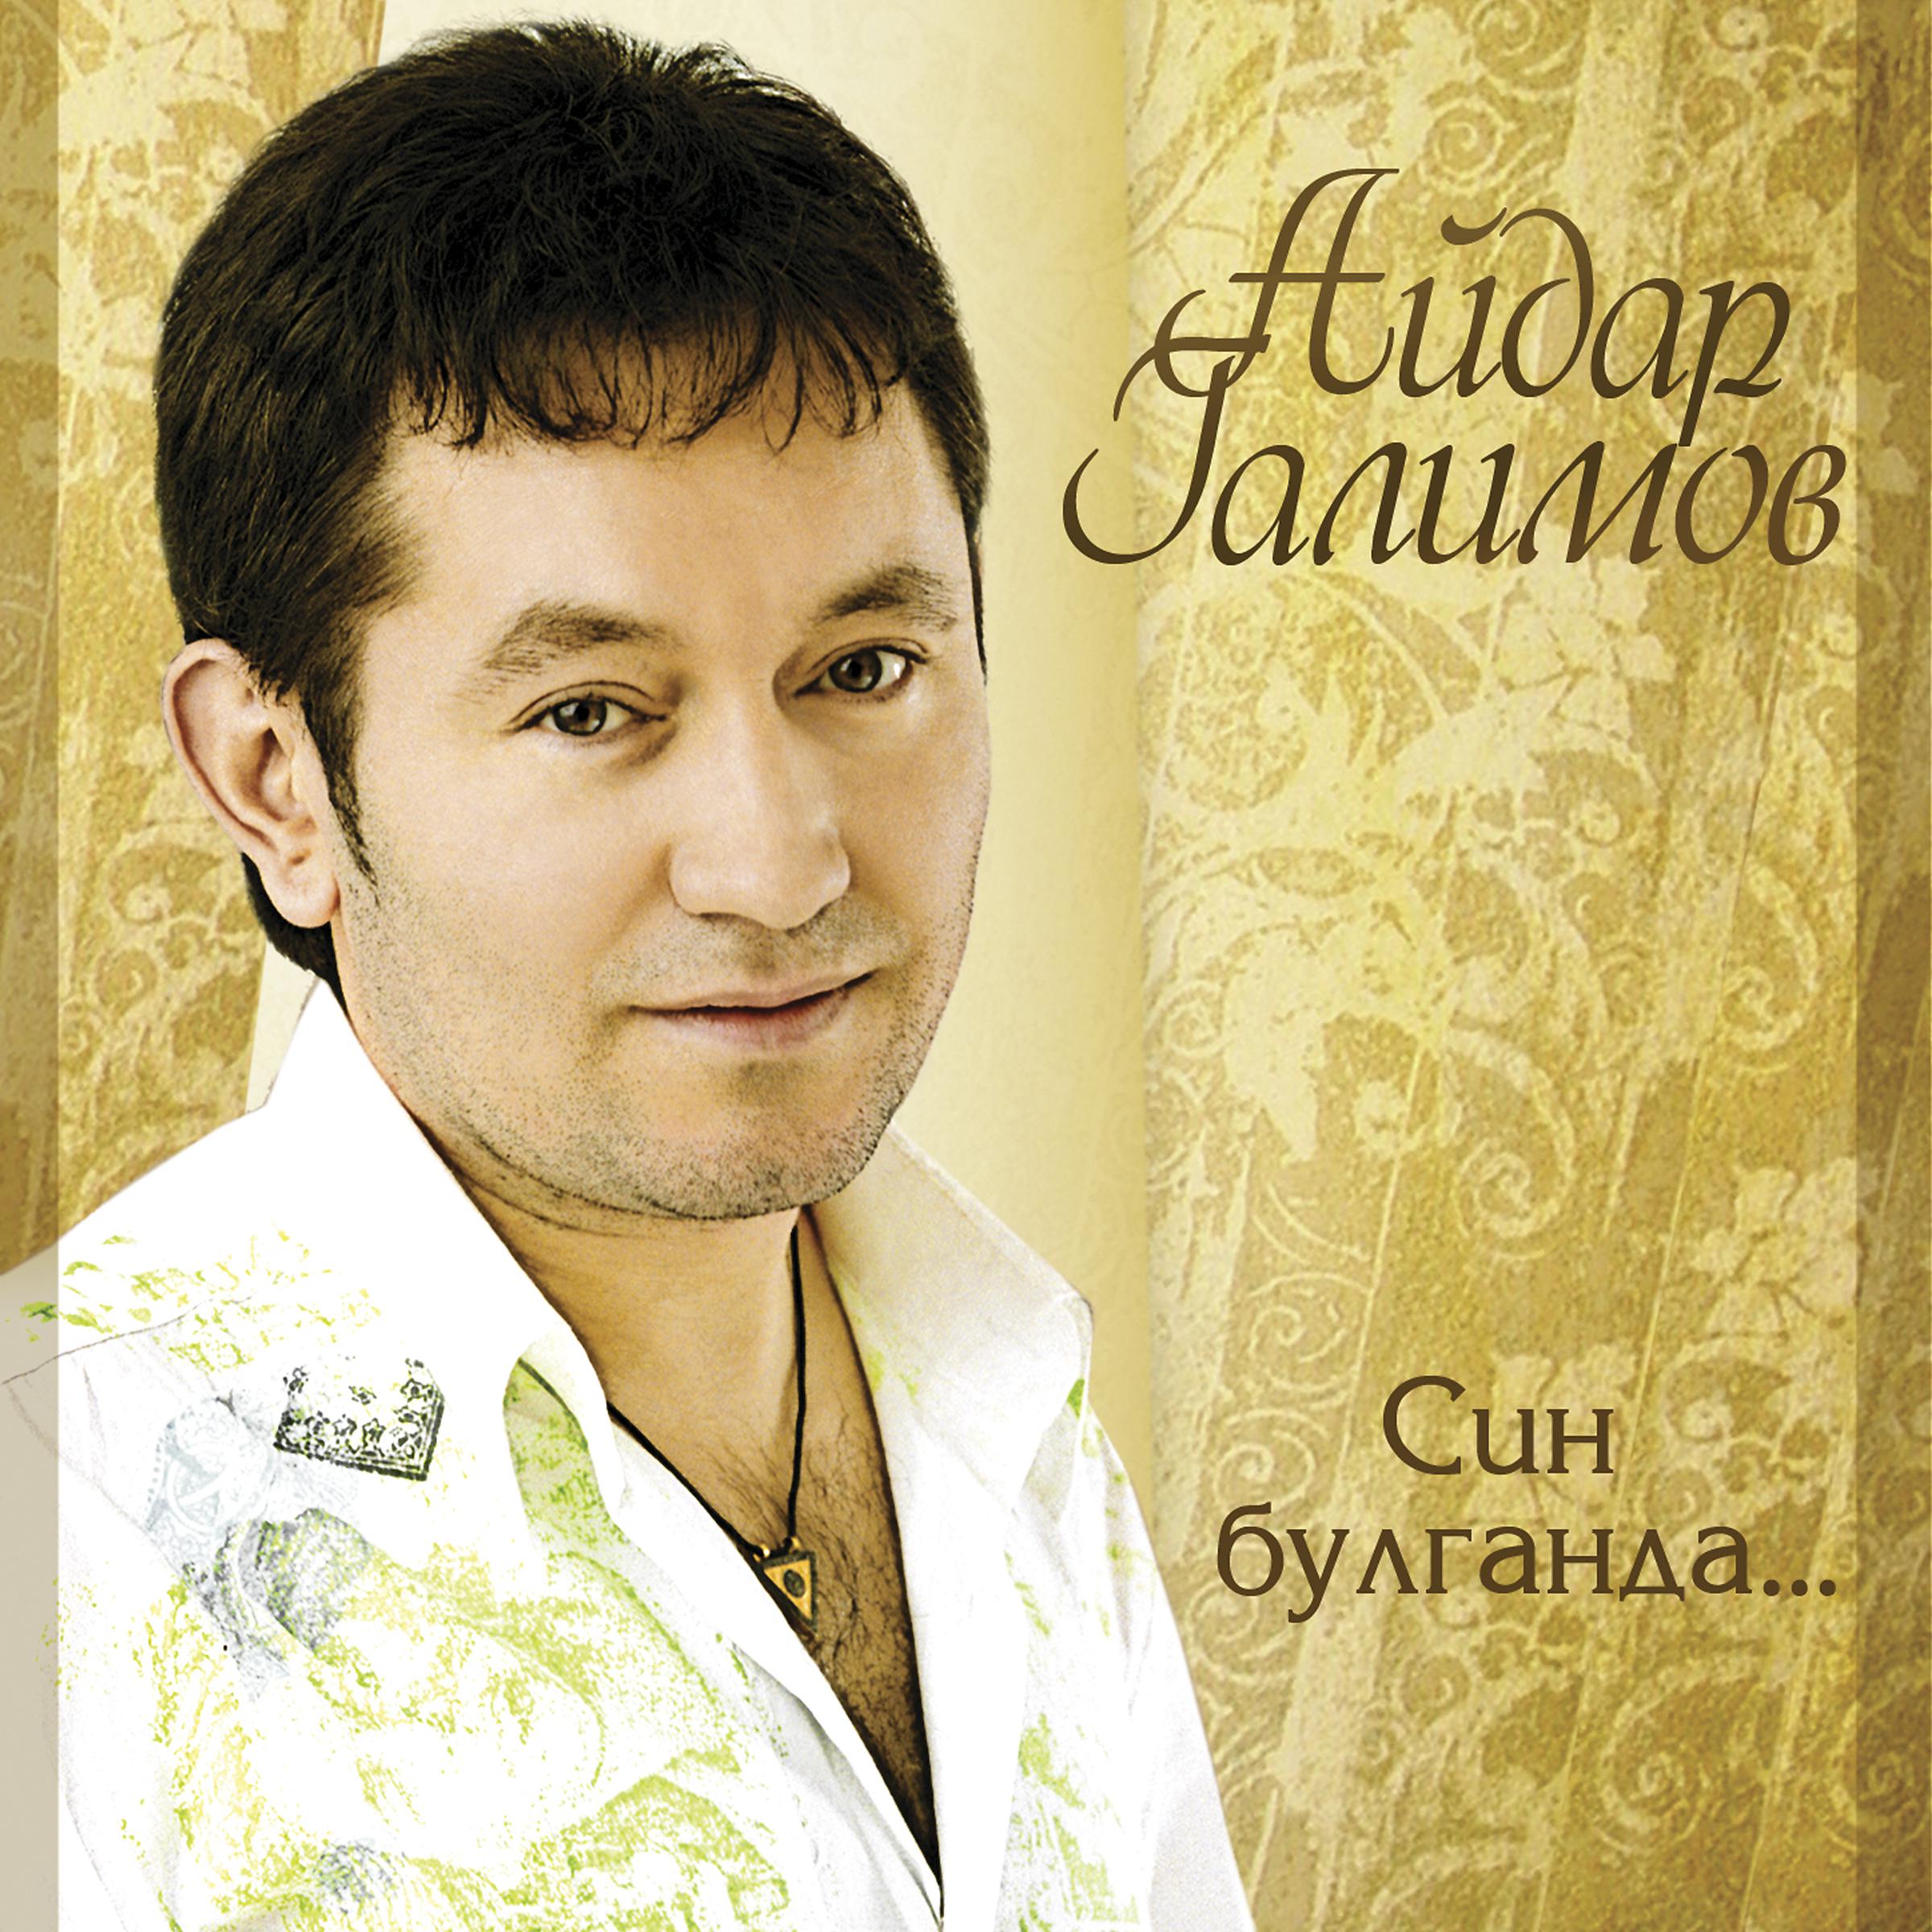 Татарский певец Ильдар Галимов. Включить татарские песни